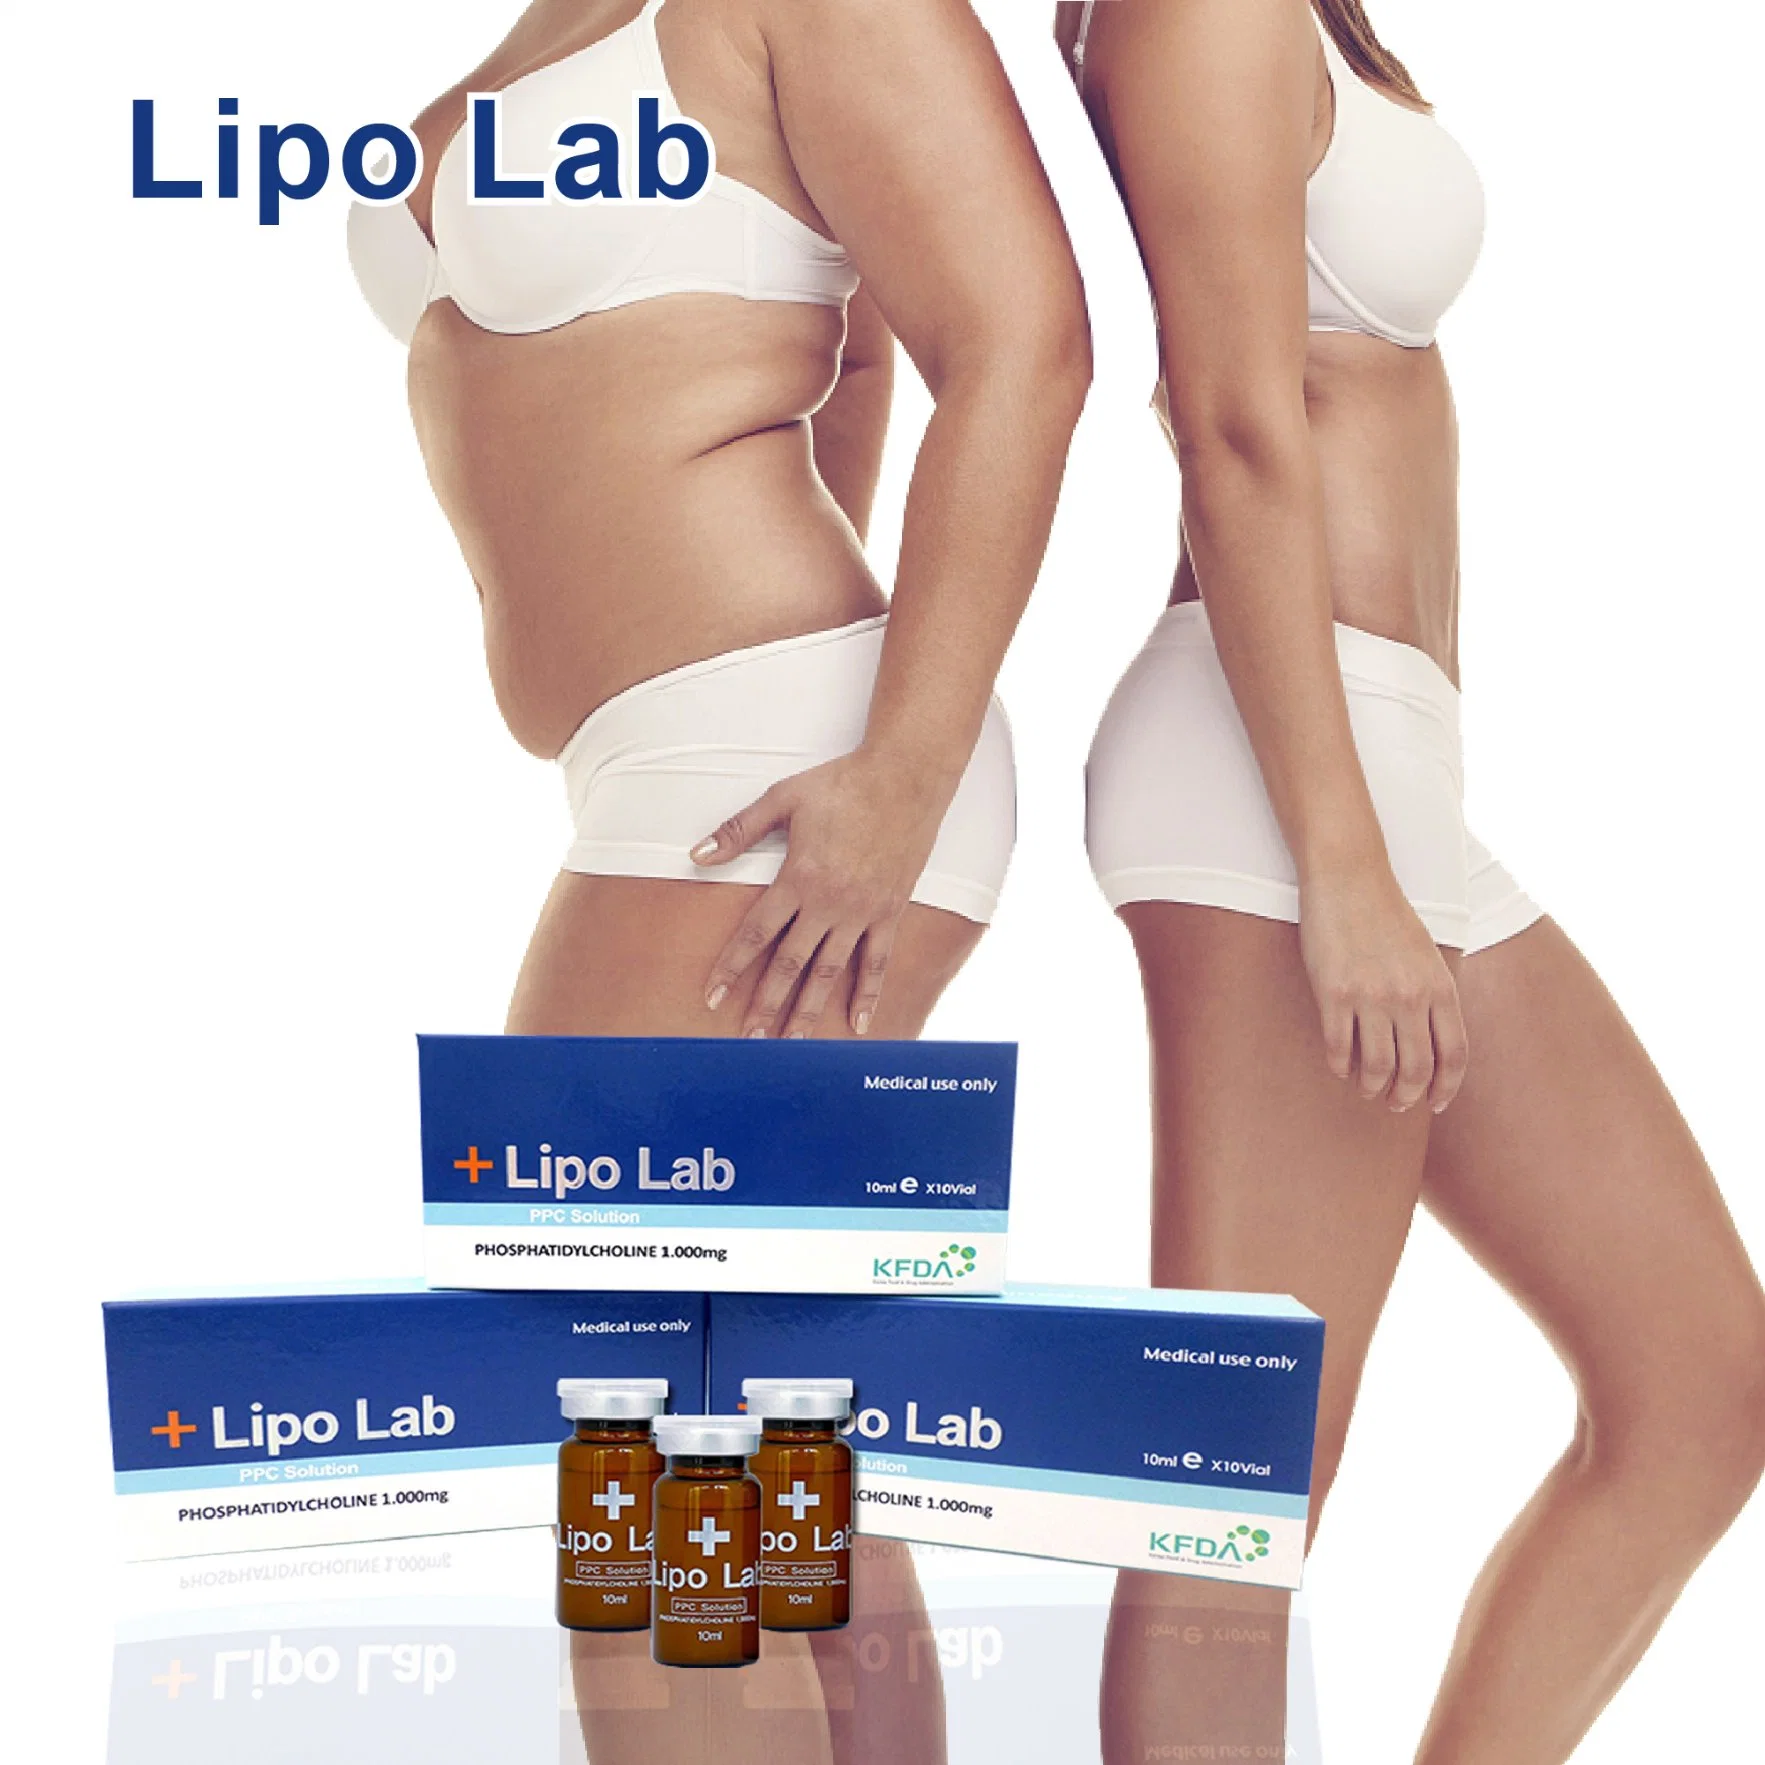 La lipólisis inyección Lipo Lipolab brazo Laboratorio de la pérdida de peso rápido